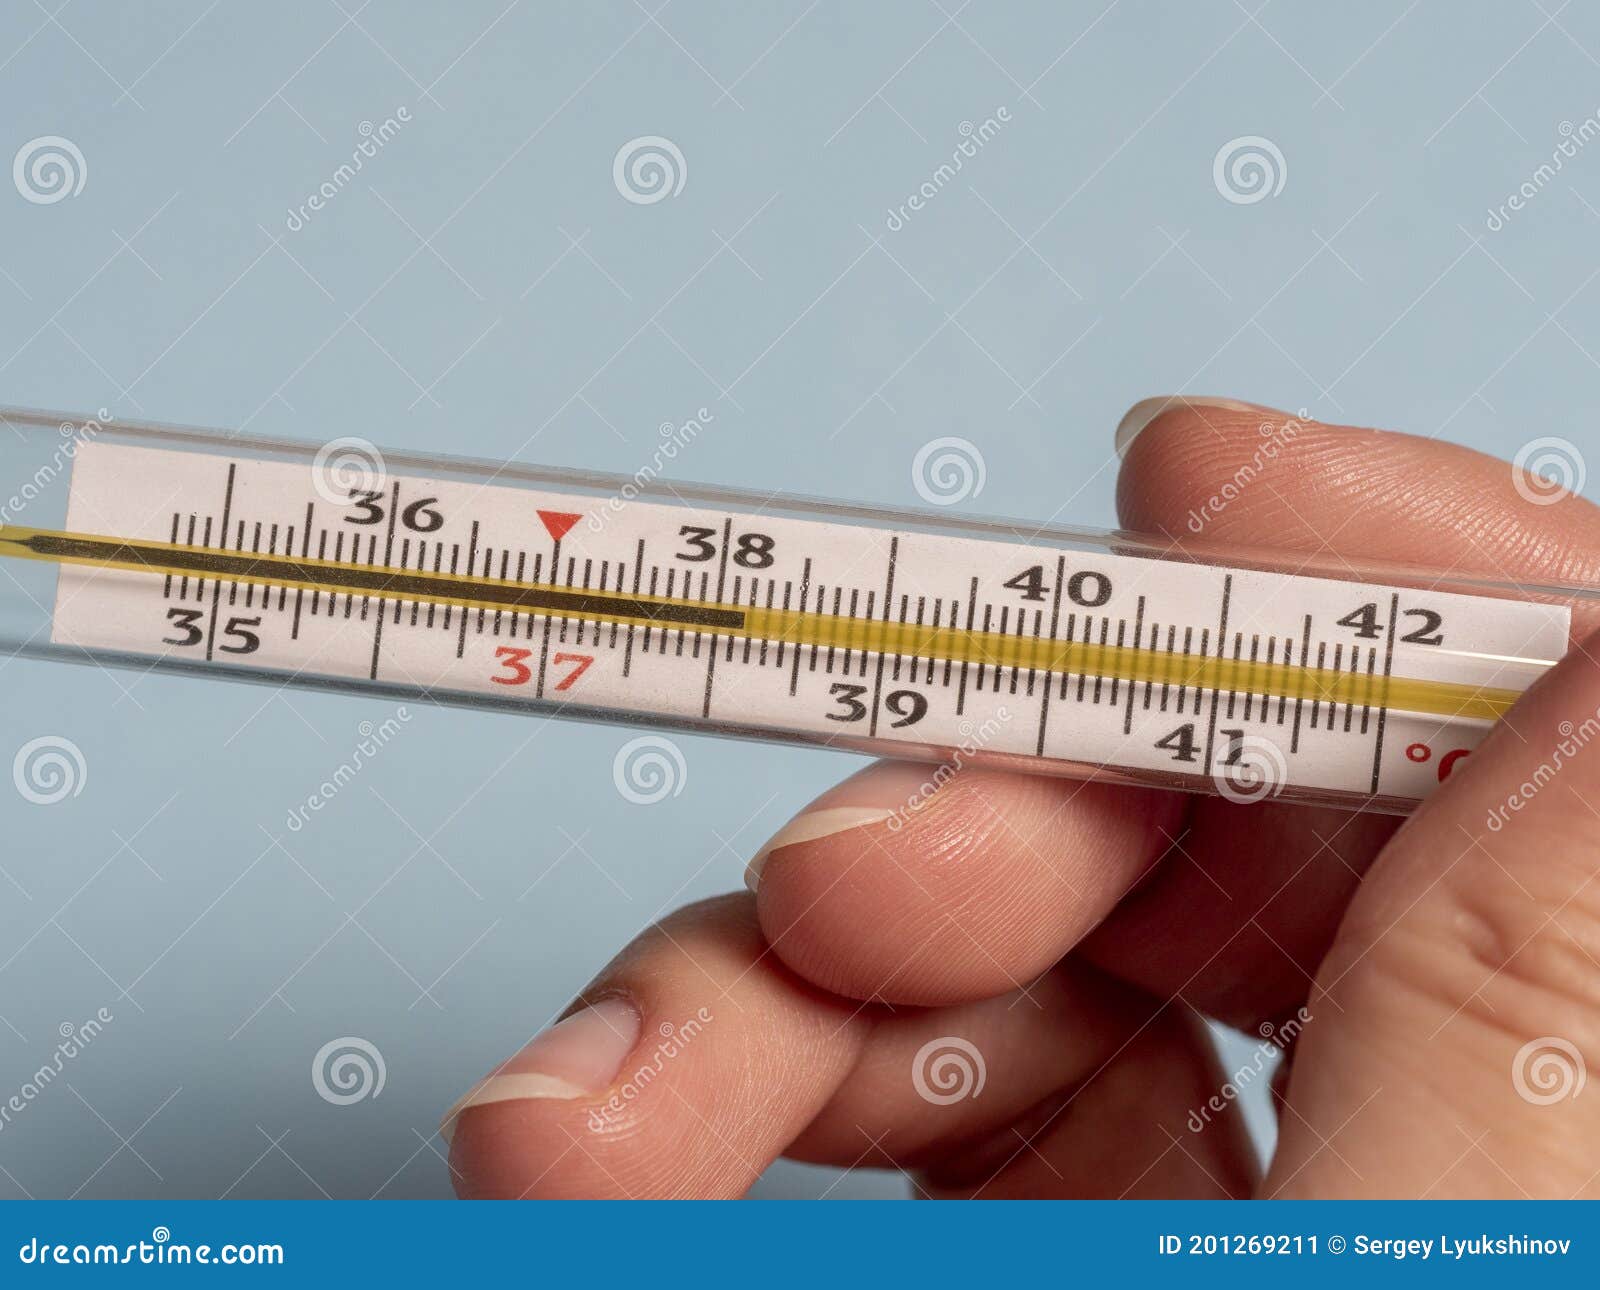 Termometro a Mercurio Nella Mano Di Una Donna Su Fondo Blu. Misura Di  Temperatura Utilizzando Un Termometro. Febbre Alta Immagine Stock -  Immagine di ammalato, oggetto: 201269211